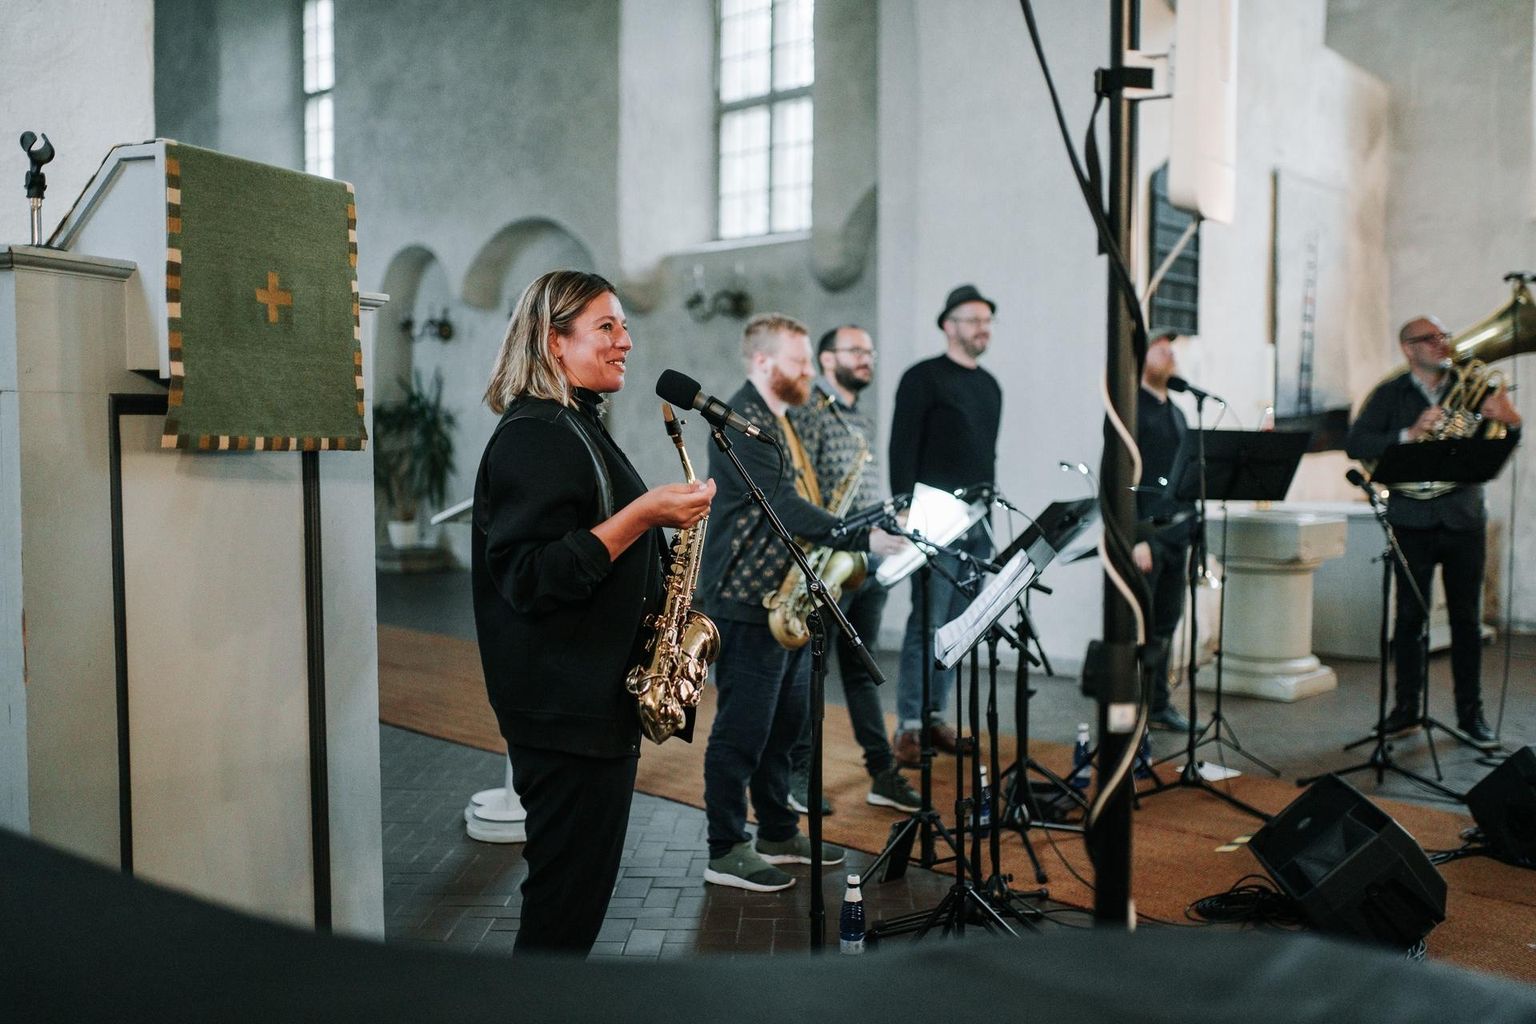 Maria Faust Sacrum Facere "Organi" missioon on näidata, et katedraali orelit saab täiesti kasutada ka uues populaarmuusikas, improvisatsioonis ja džässis.